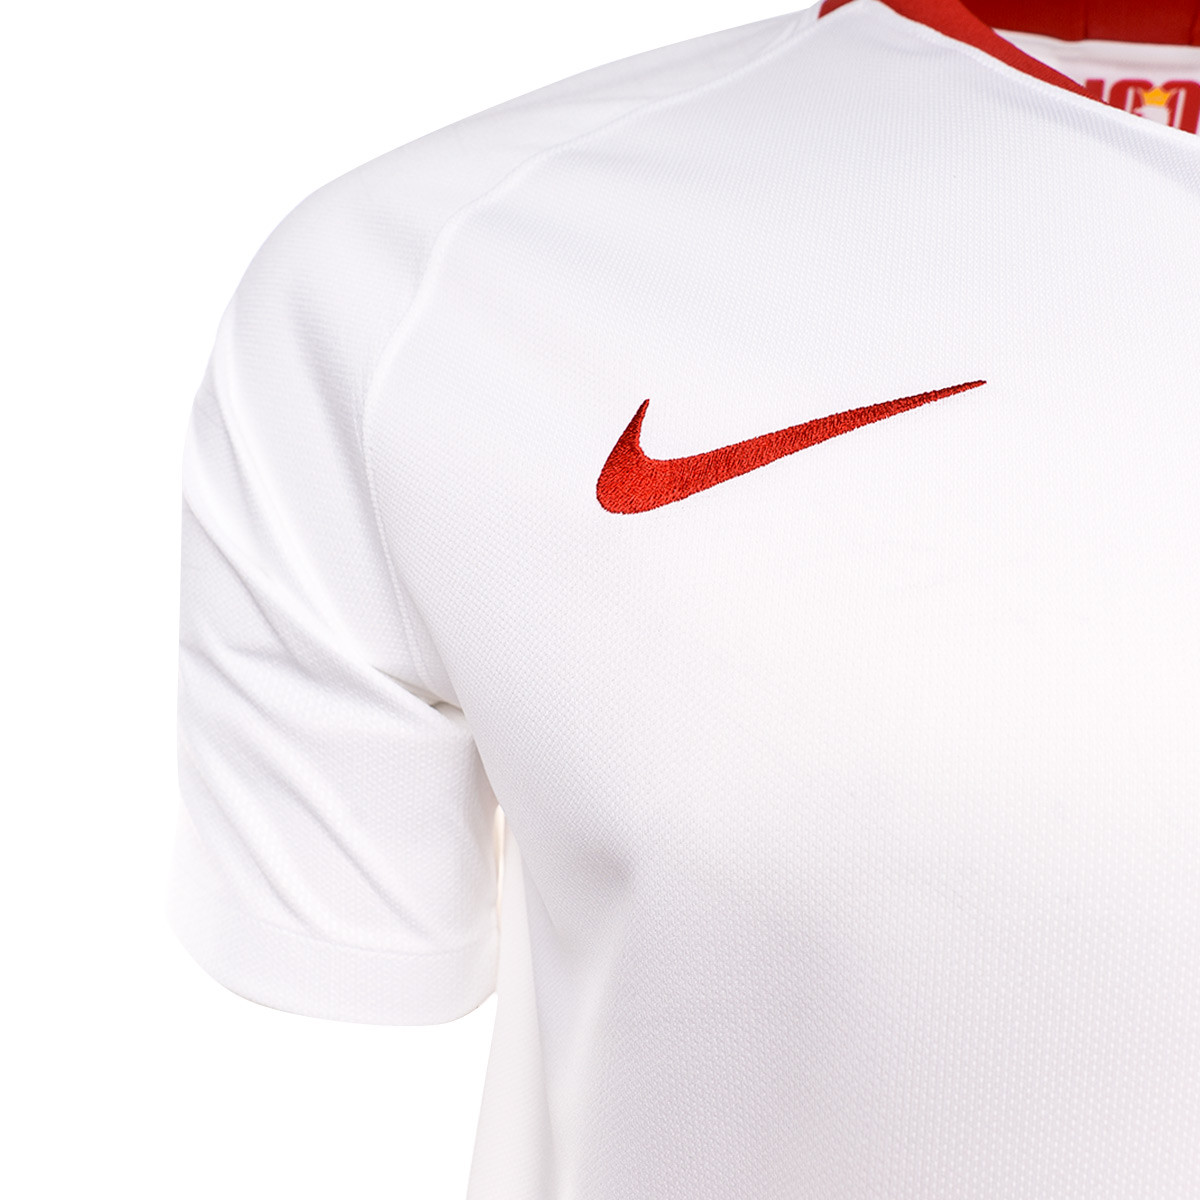 Найк Польша. Nike Польша. Nike Poland logo. Nike poland